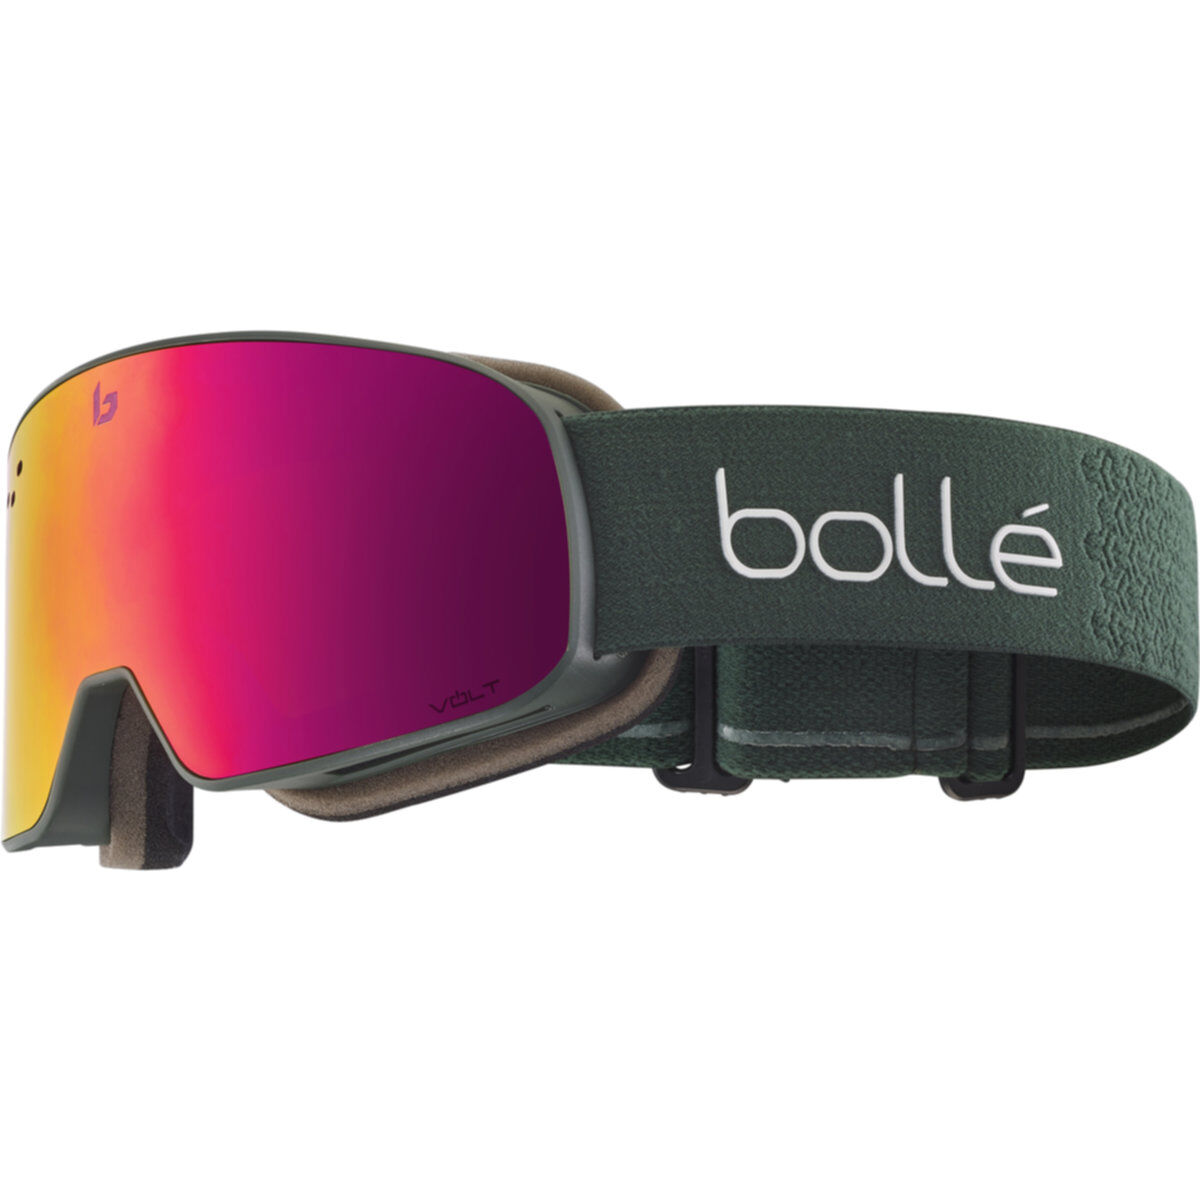 Bolle Boll Ski Goggles Carve Shiny Black/Citrus Gun Snowboard Goggles 